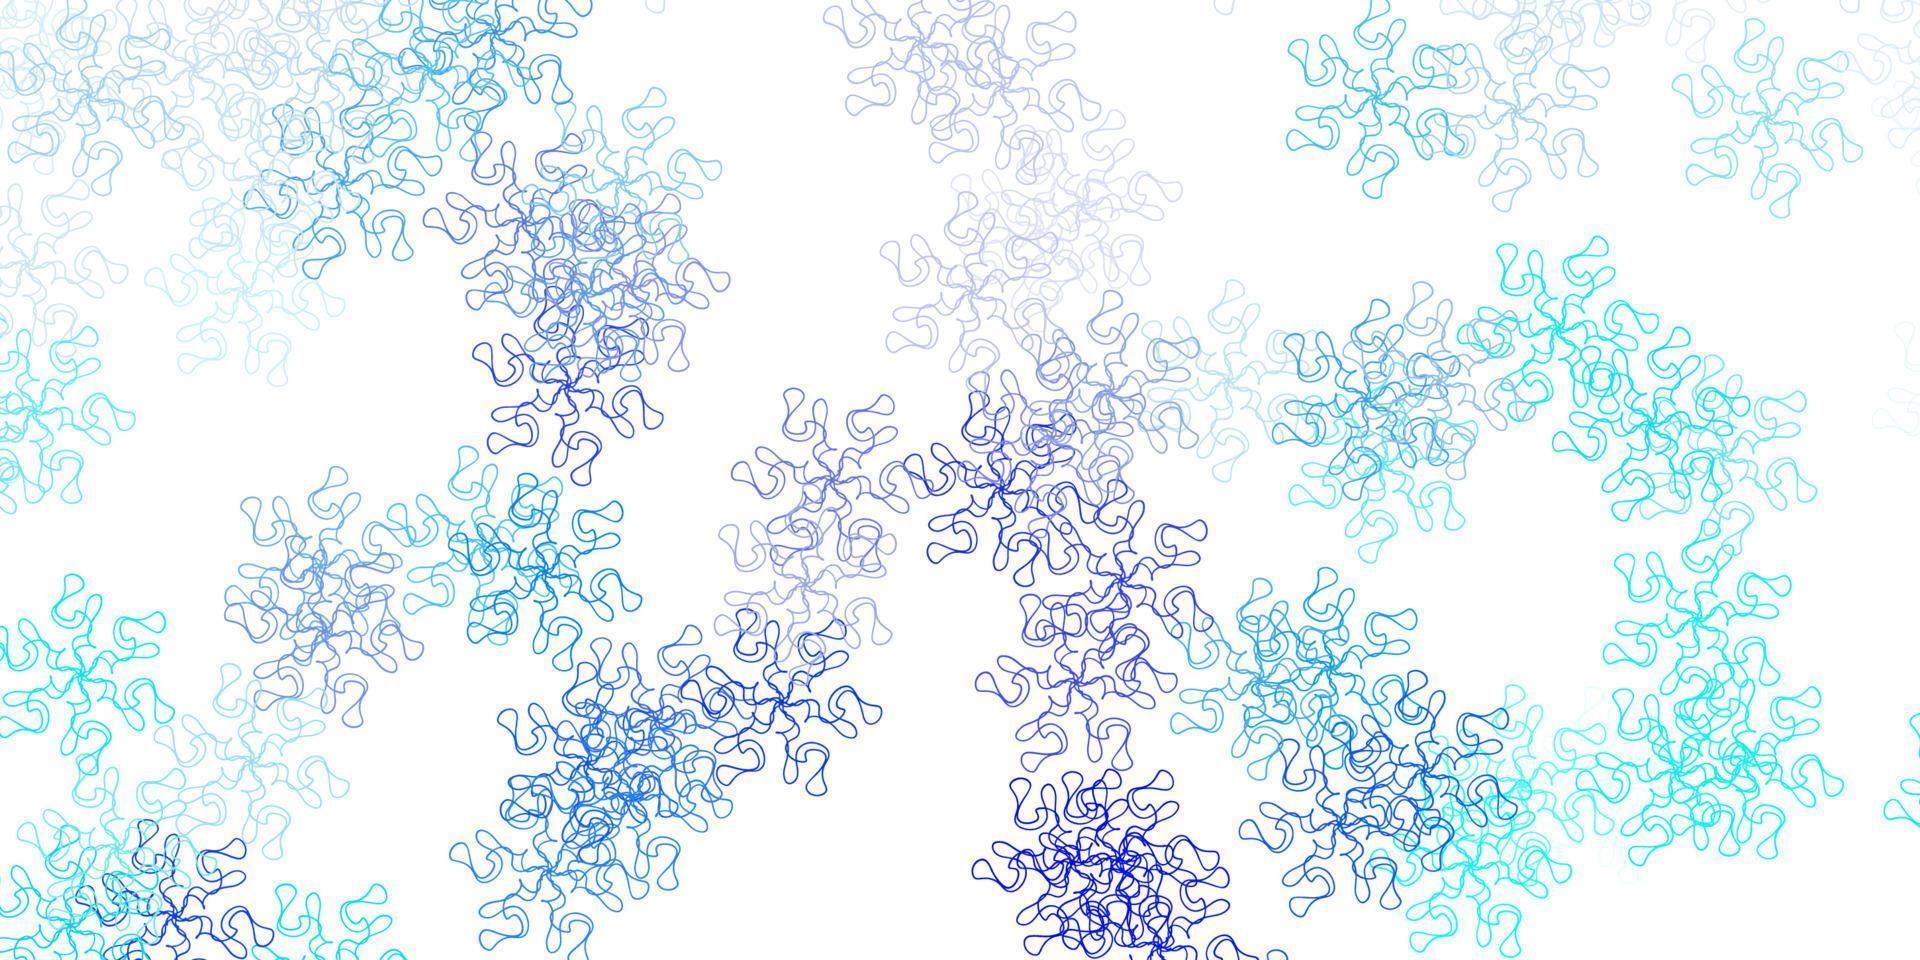 motif de doodle vecteur bleu clair avec des fleurs.